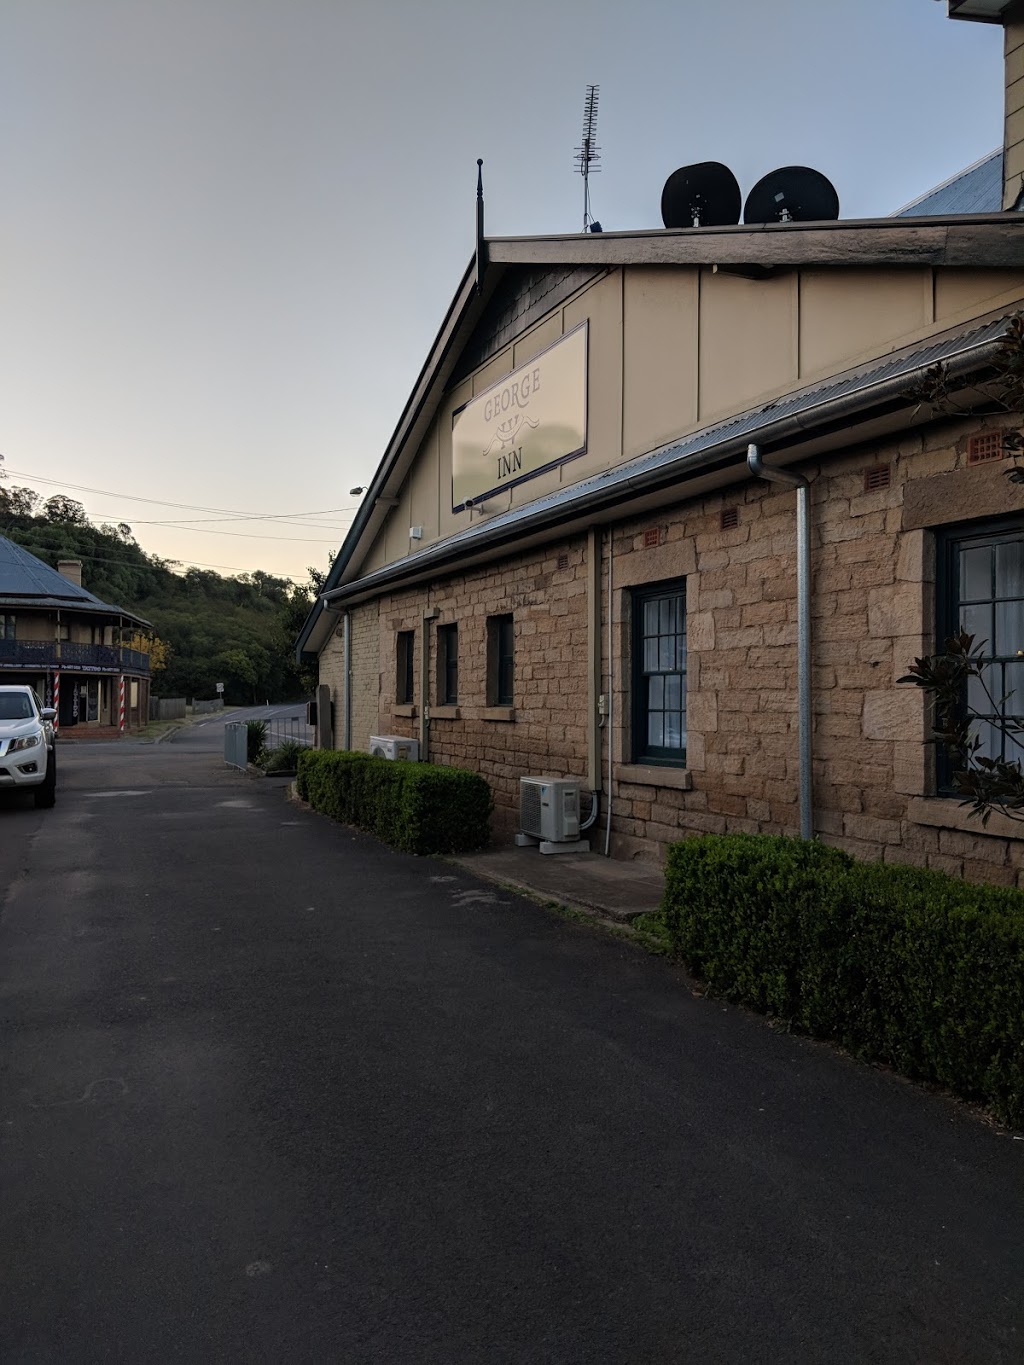 George IV Inn | lodging | 180 Argyle St, Picton NSW 2571, Australia | 0246017730 OR +61 2 4601 7730